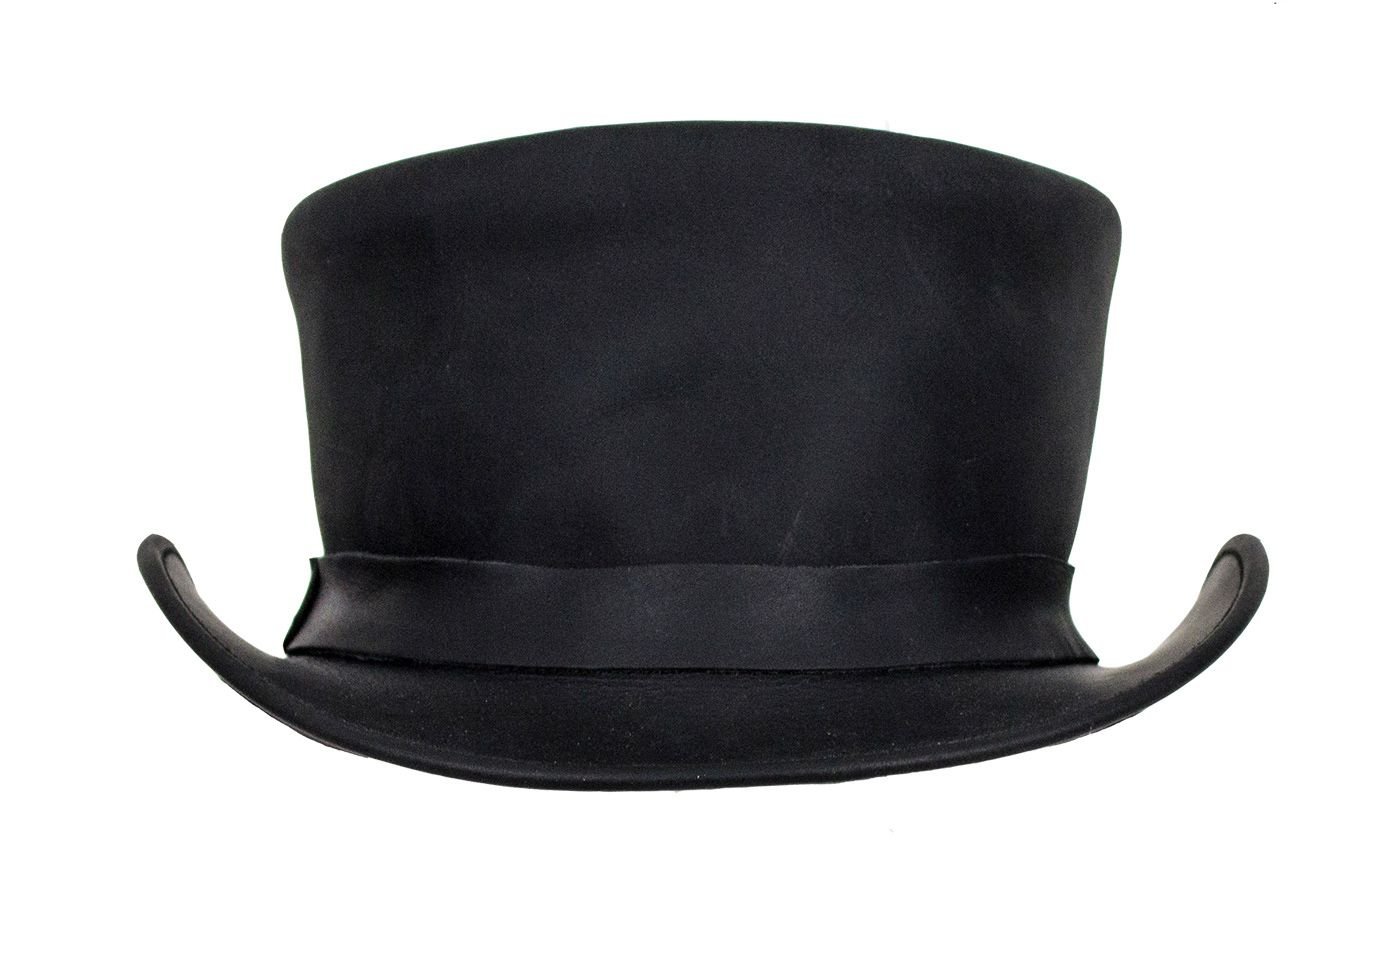 Deadman Top Hat - Men's - Black Leather - HAT1-11-DL